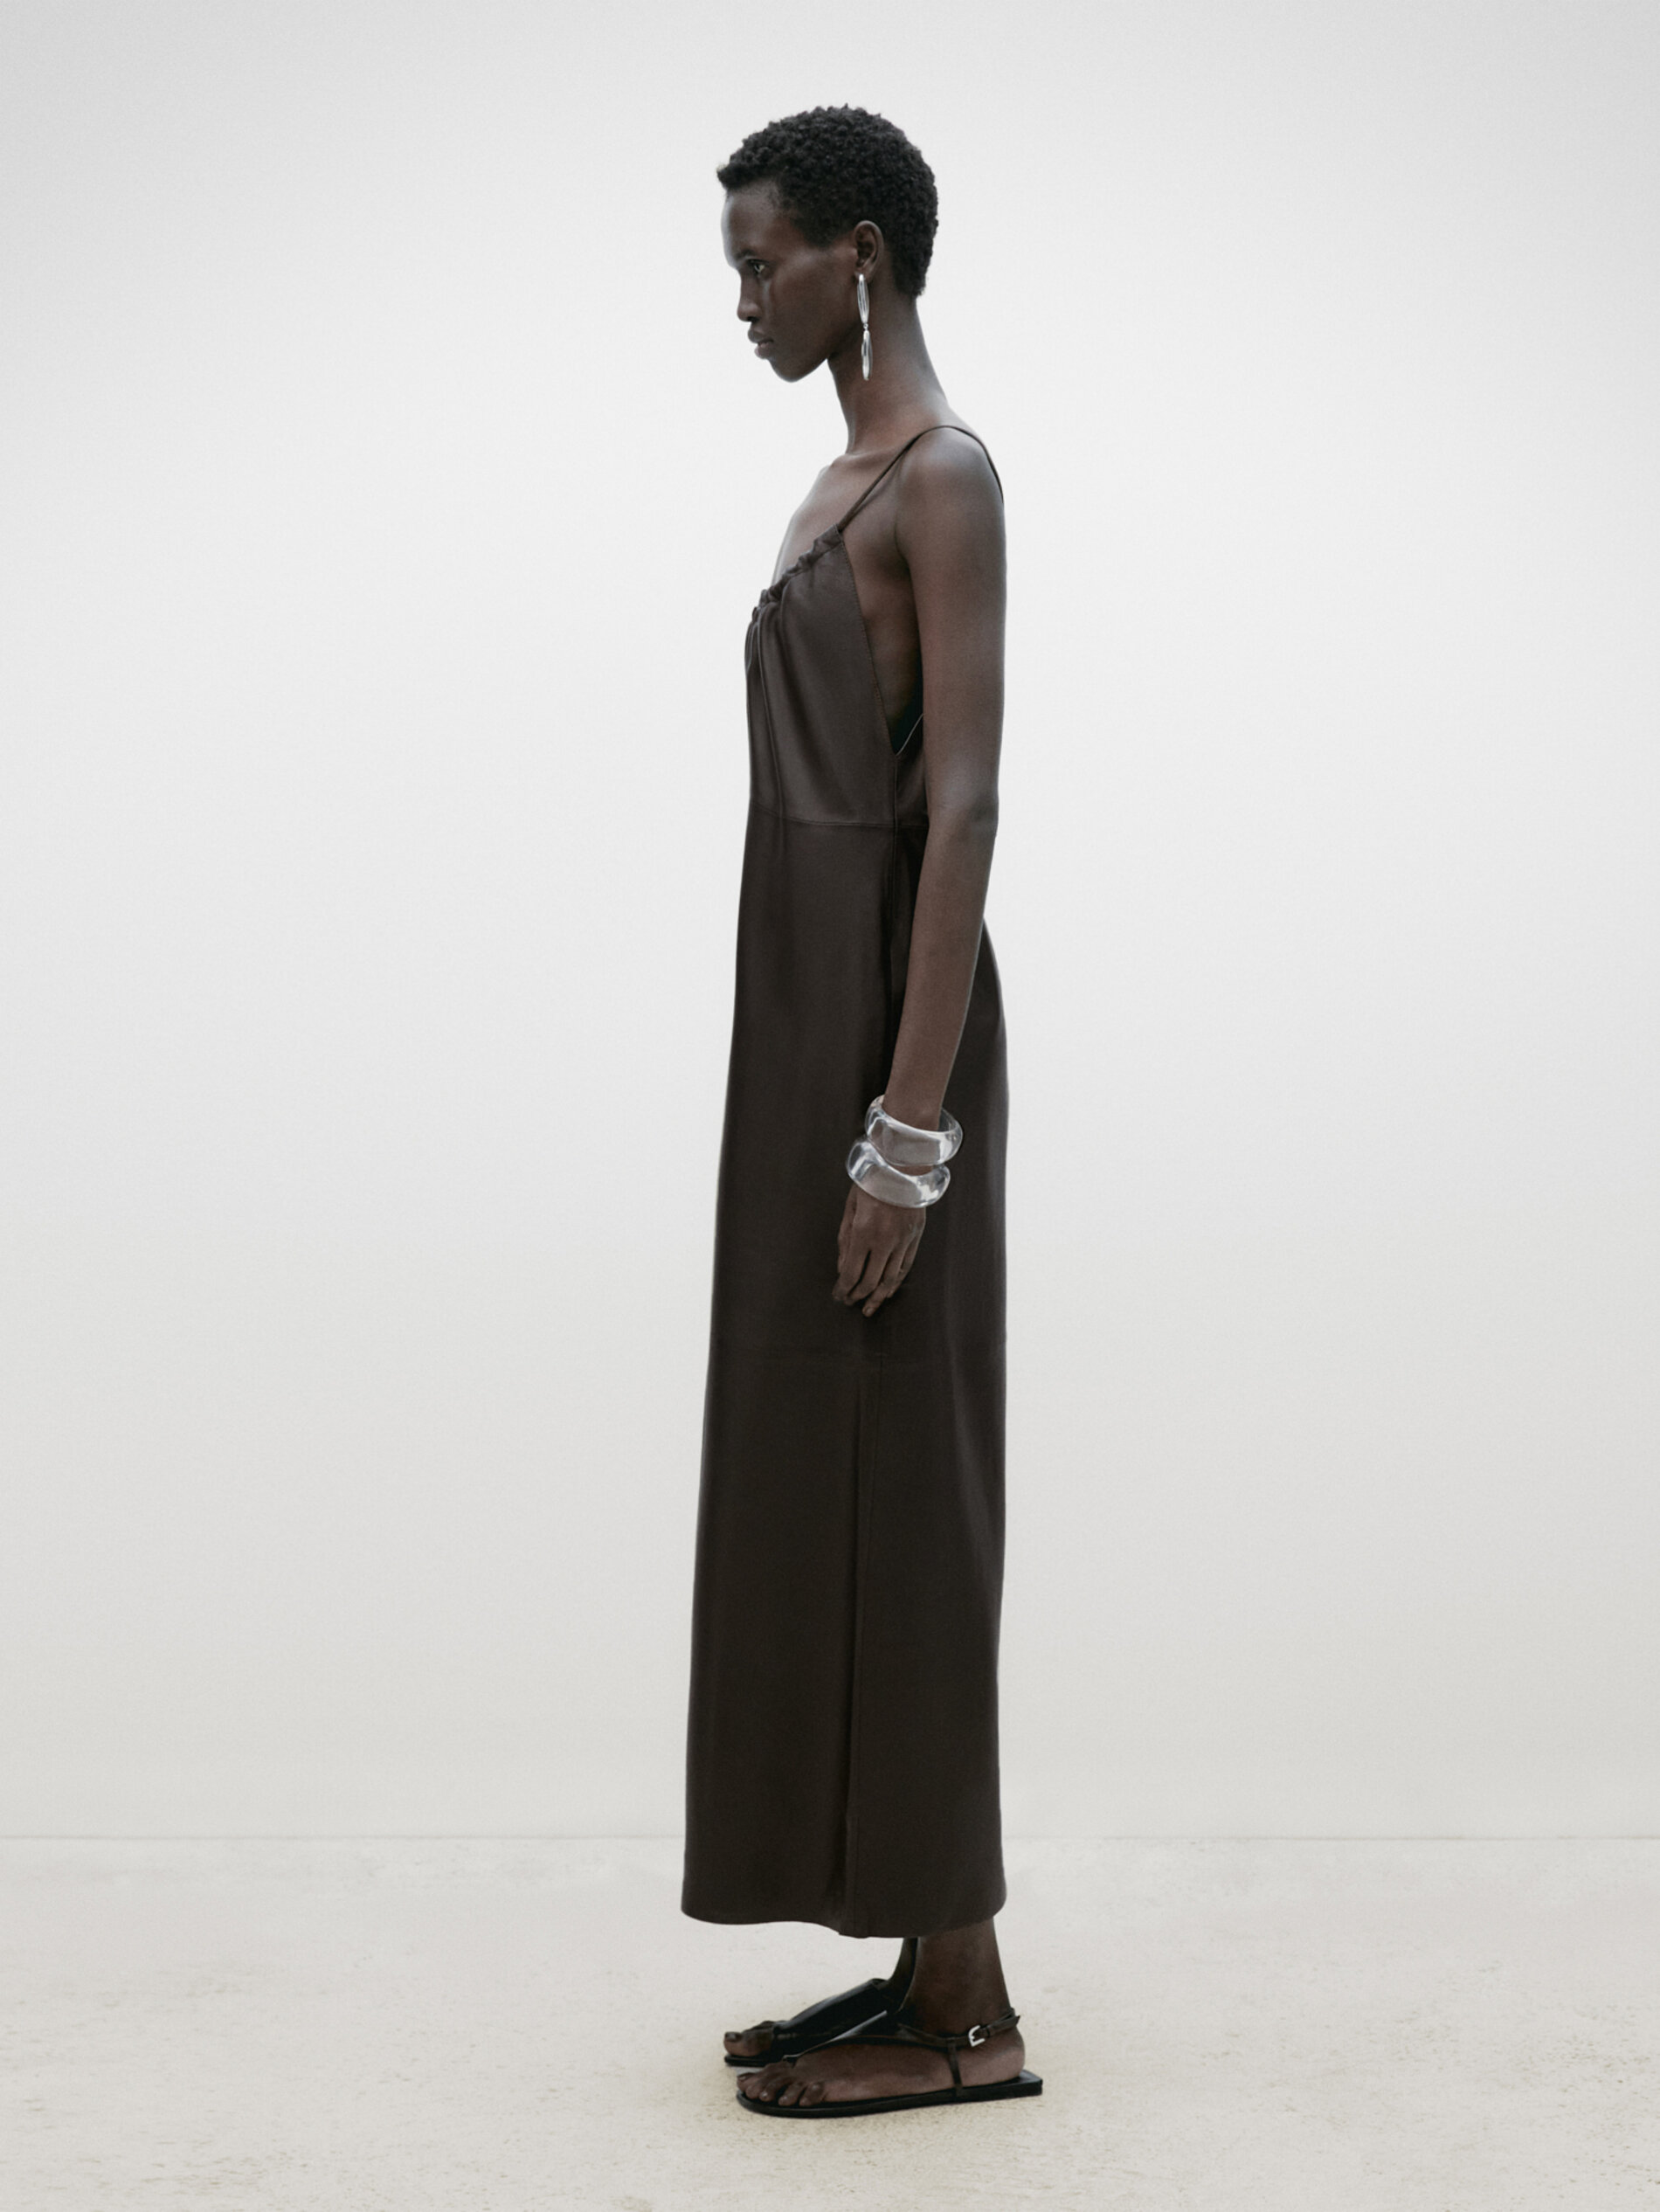 Stylish Women's Dresses - Massimo Dutti